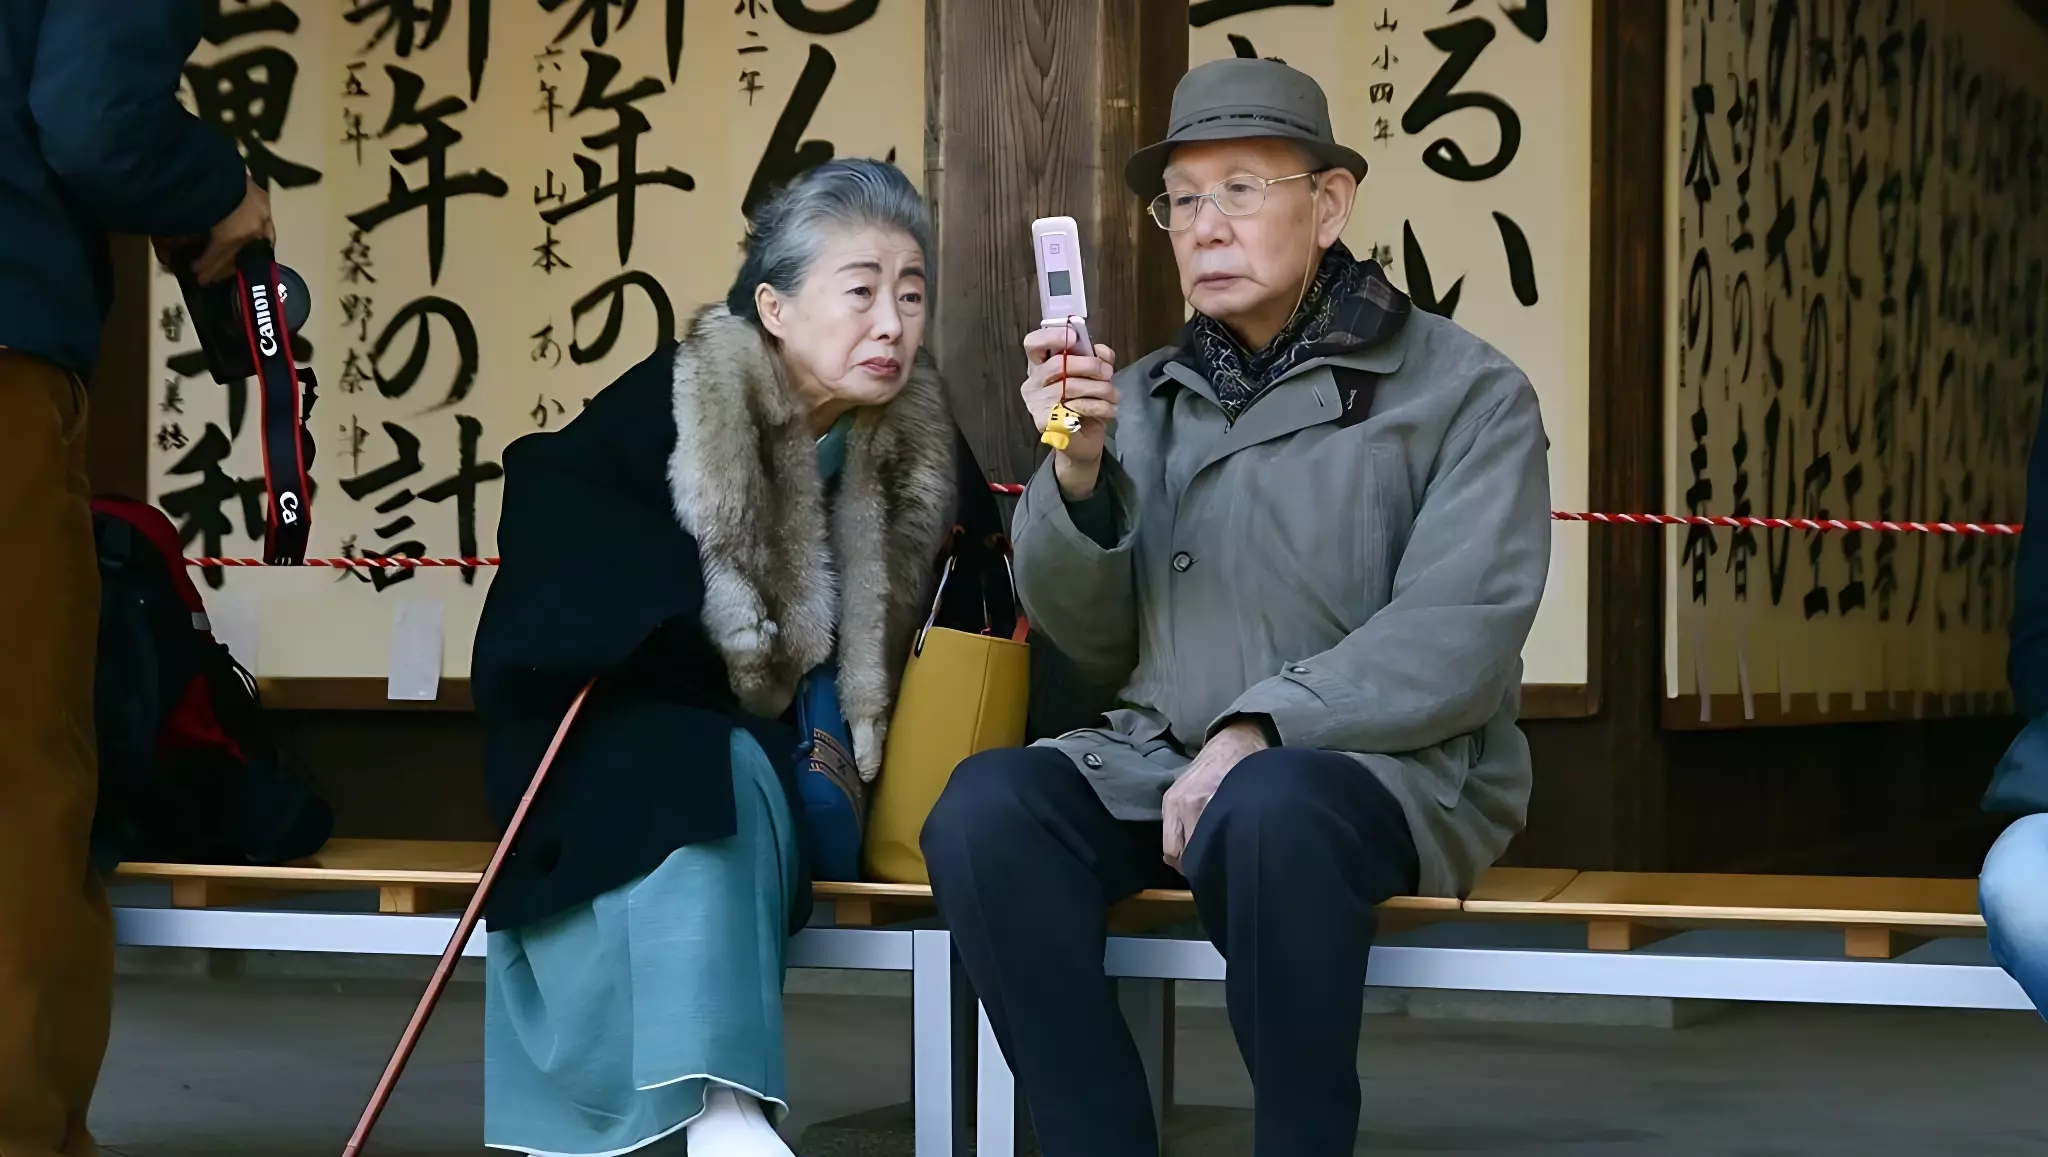 Ежедневное меню жителей острова Окинава позволяет им доживать до глубокой старости